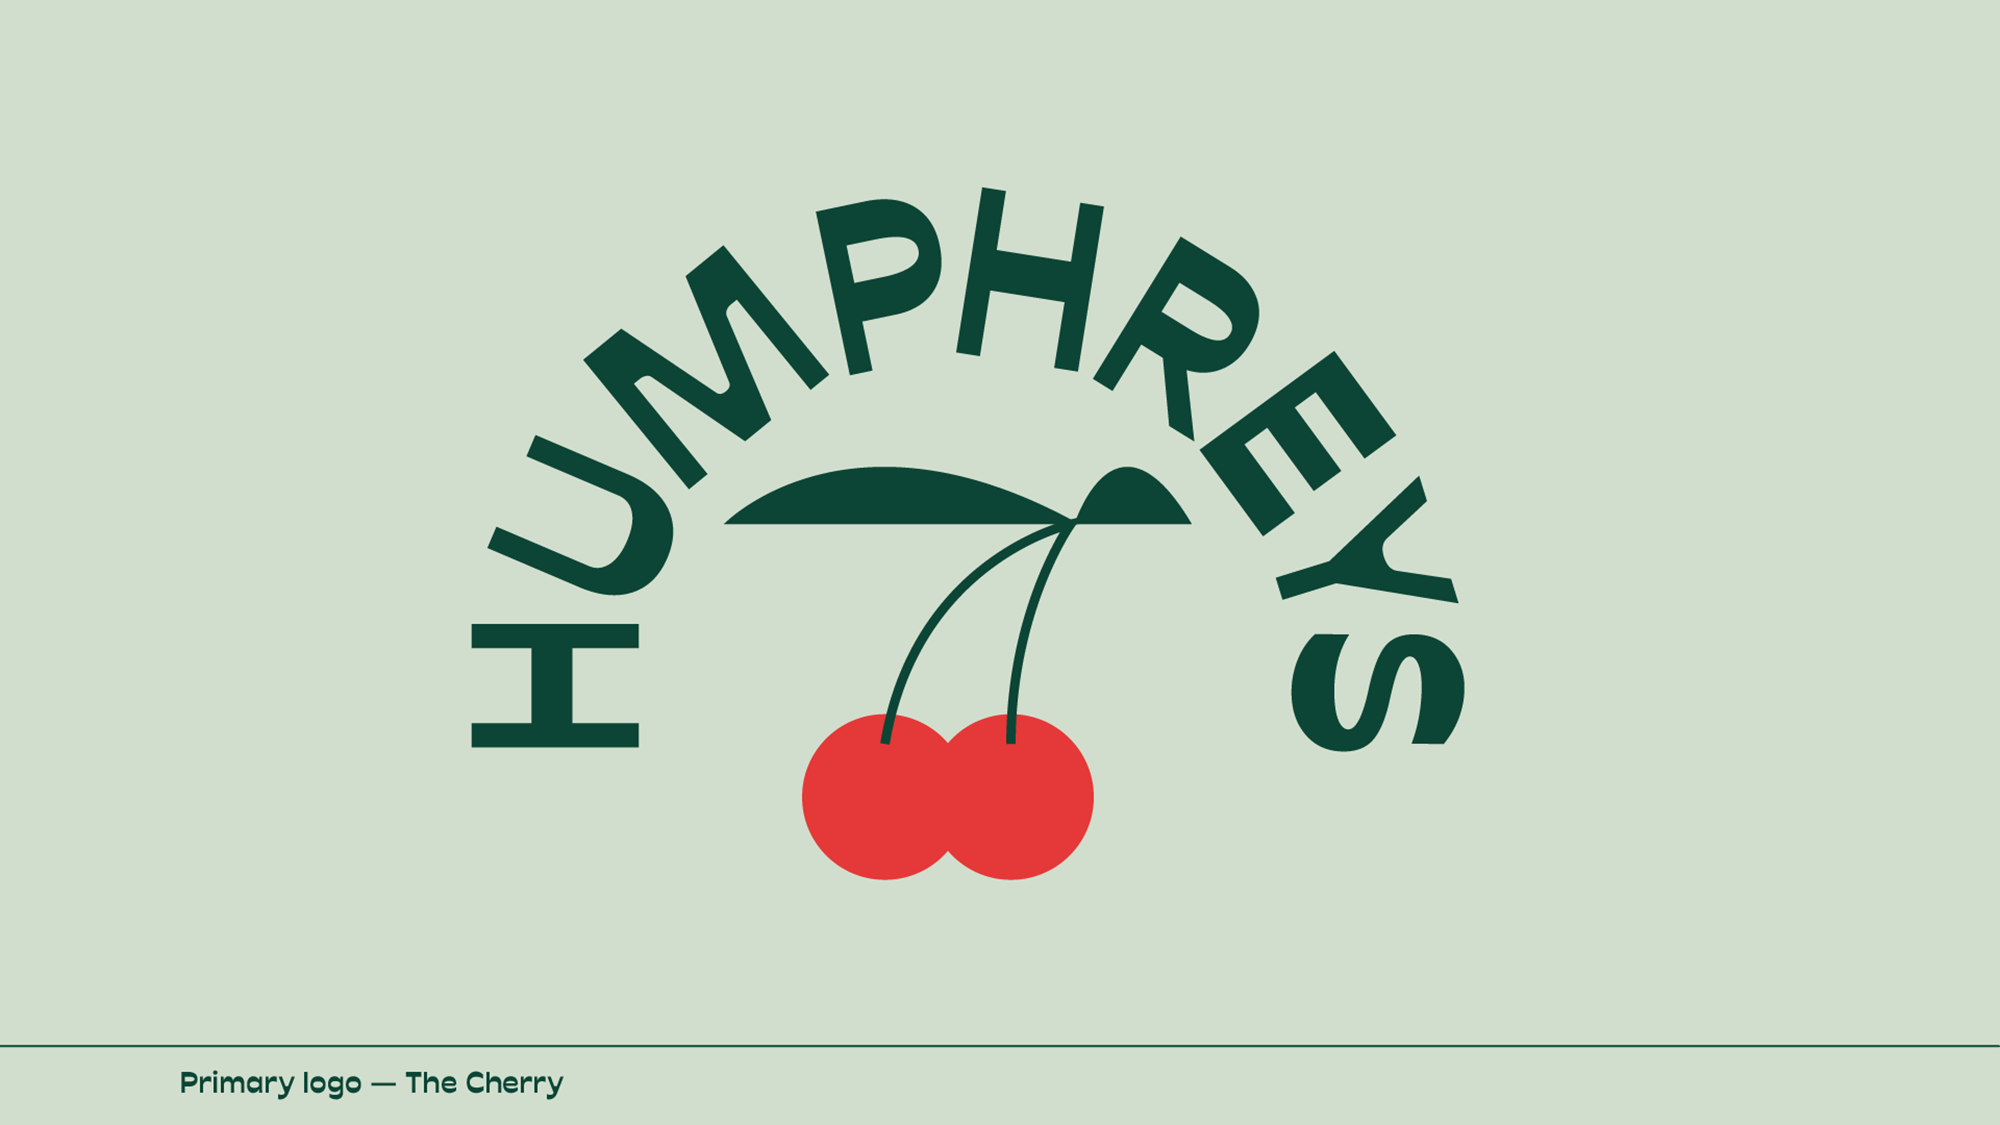 Cover image: Humphreys Pub & Garden